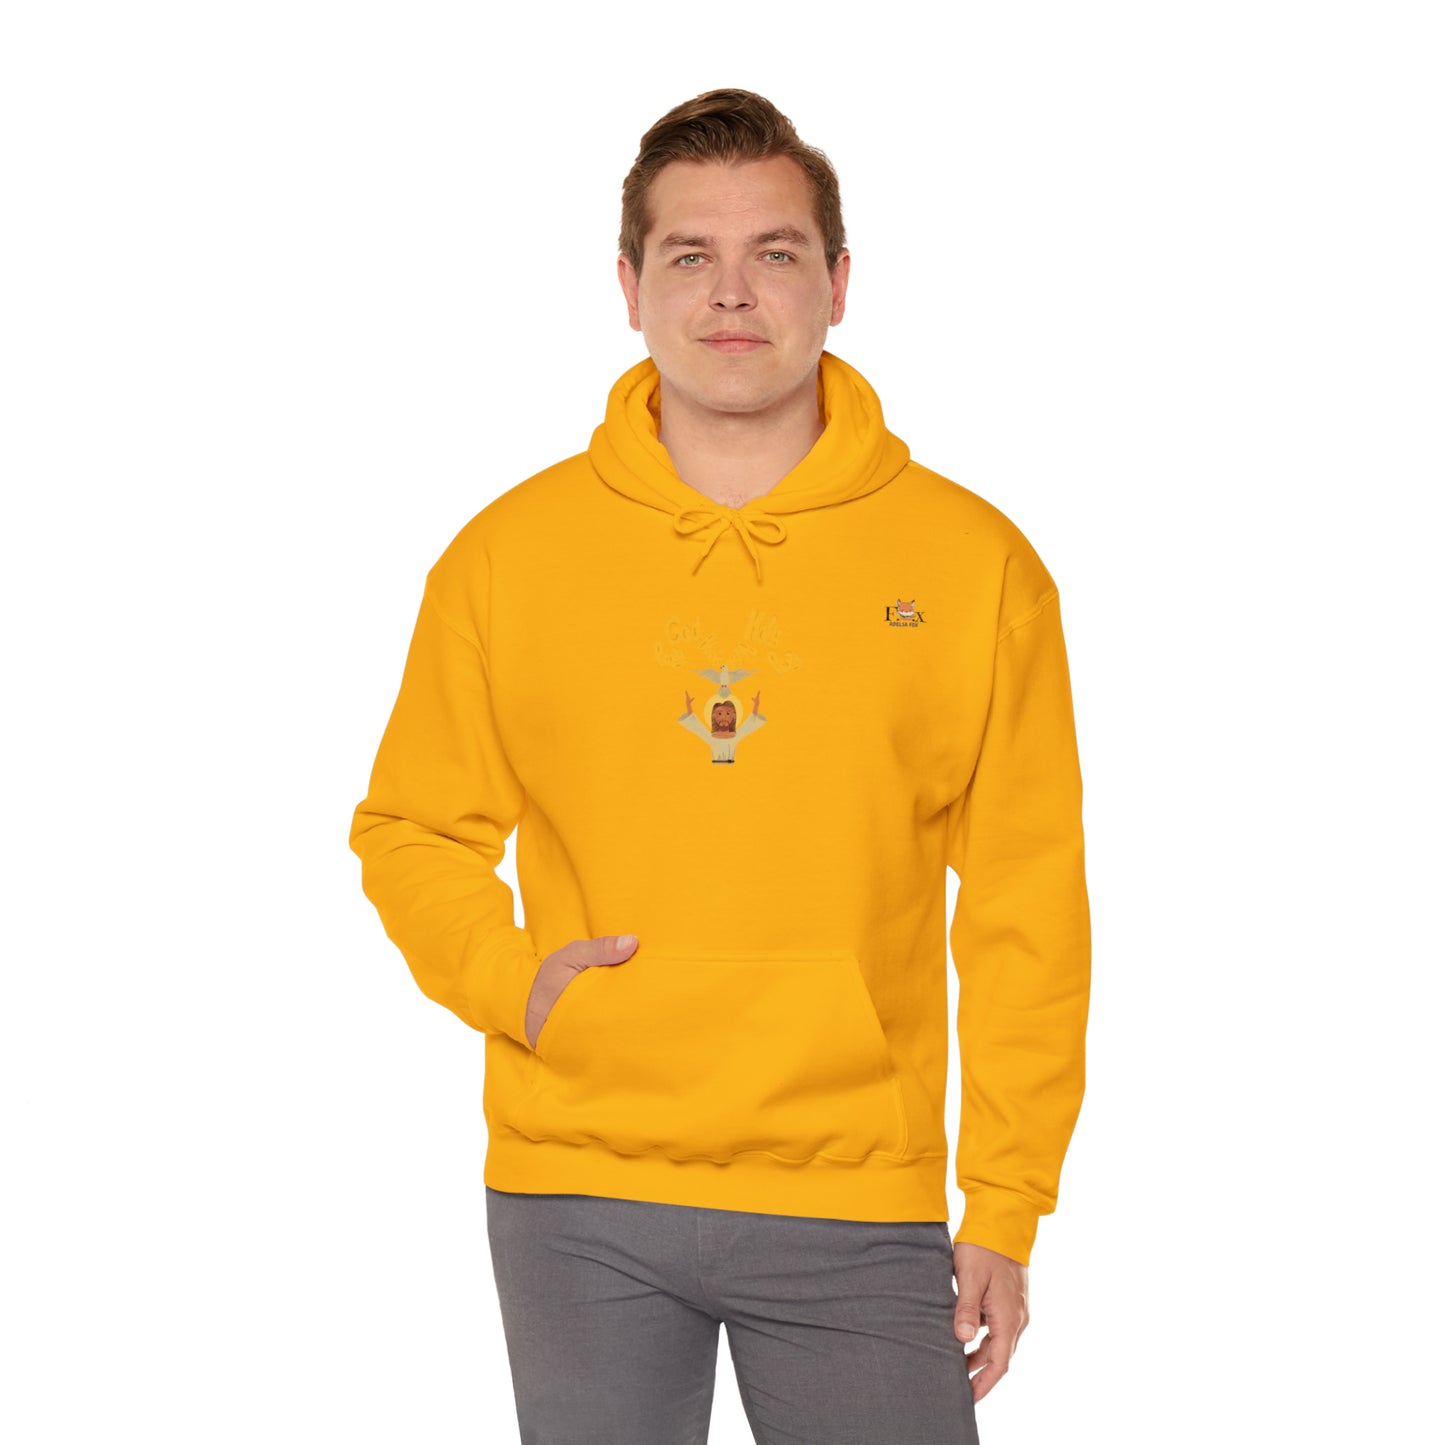 Holy Spirit- Unisex Hooded Sweatshirt